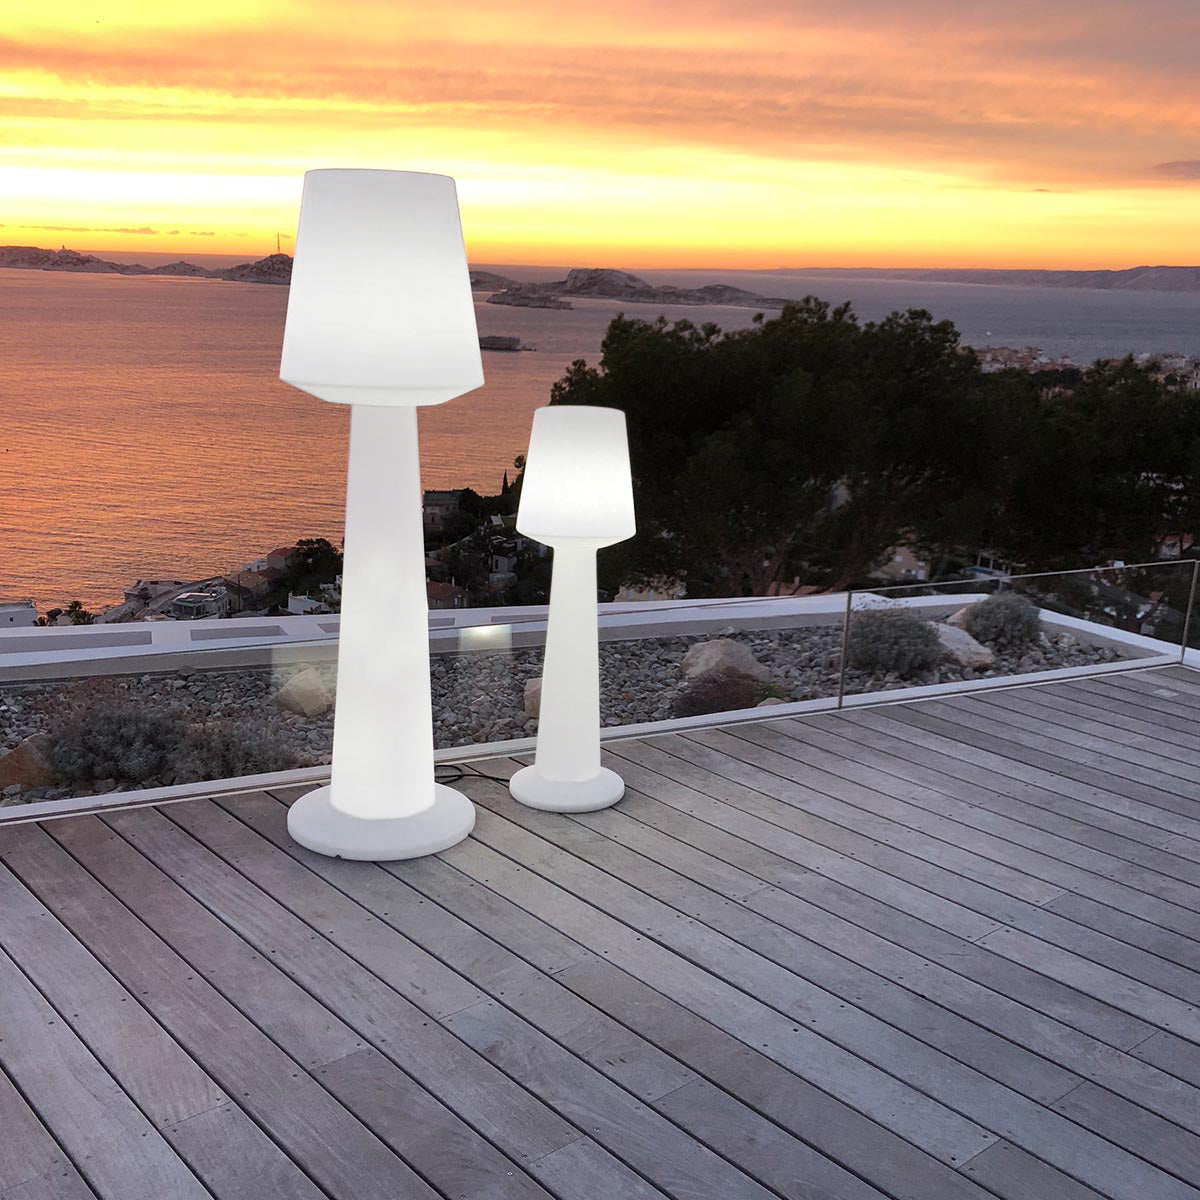 Lampadaire design lumineux filaire pour extérieur éclairage puissant LED blanc AUSTRAL H170cm culot E27